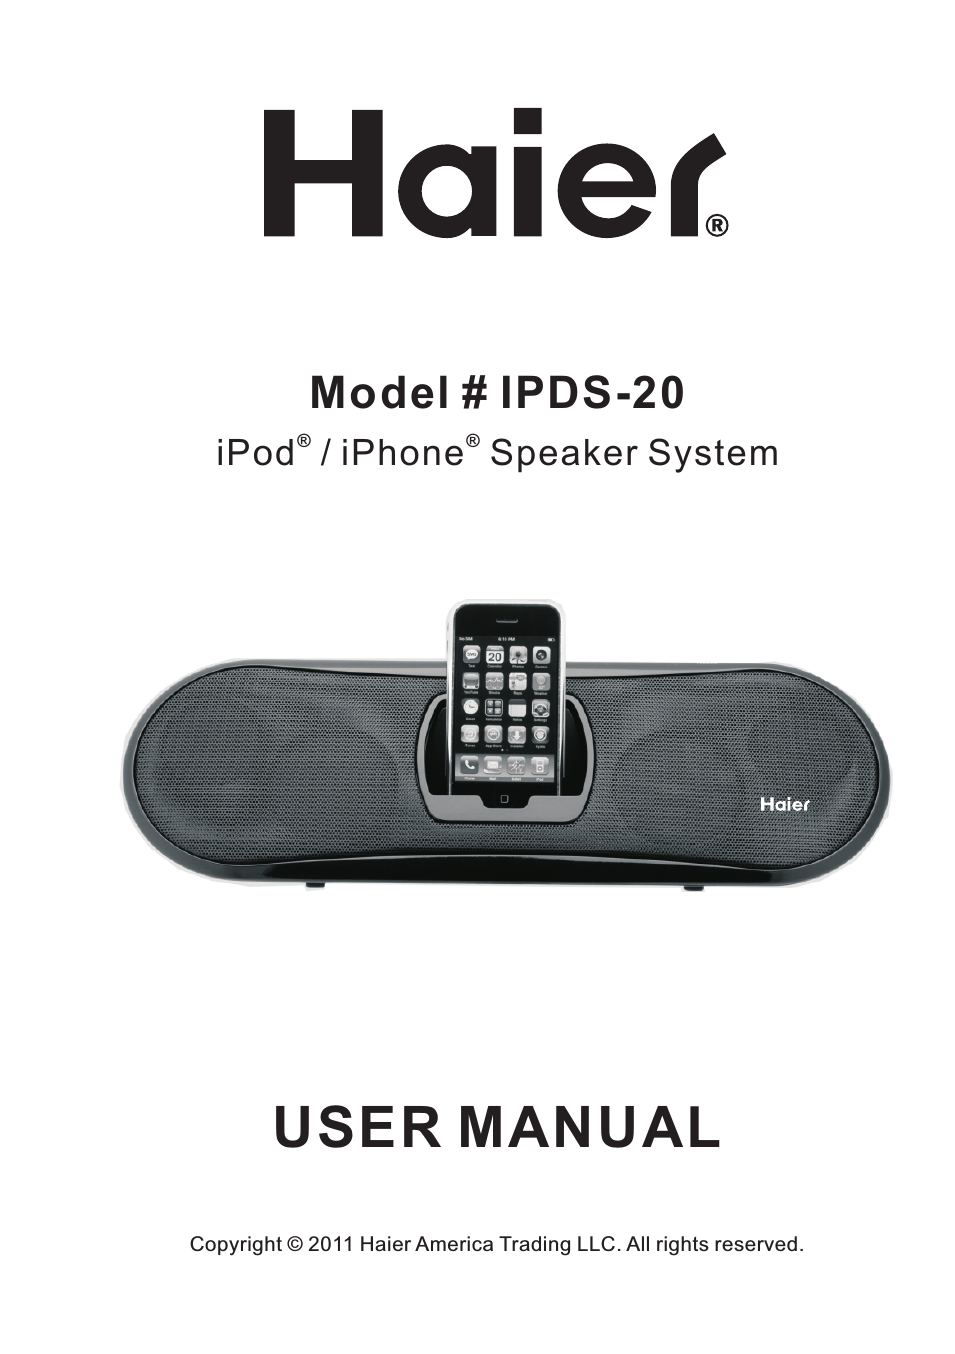 IPOD IPDS-20